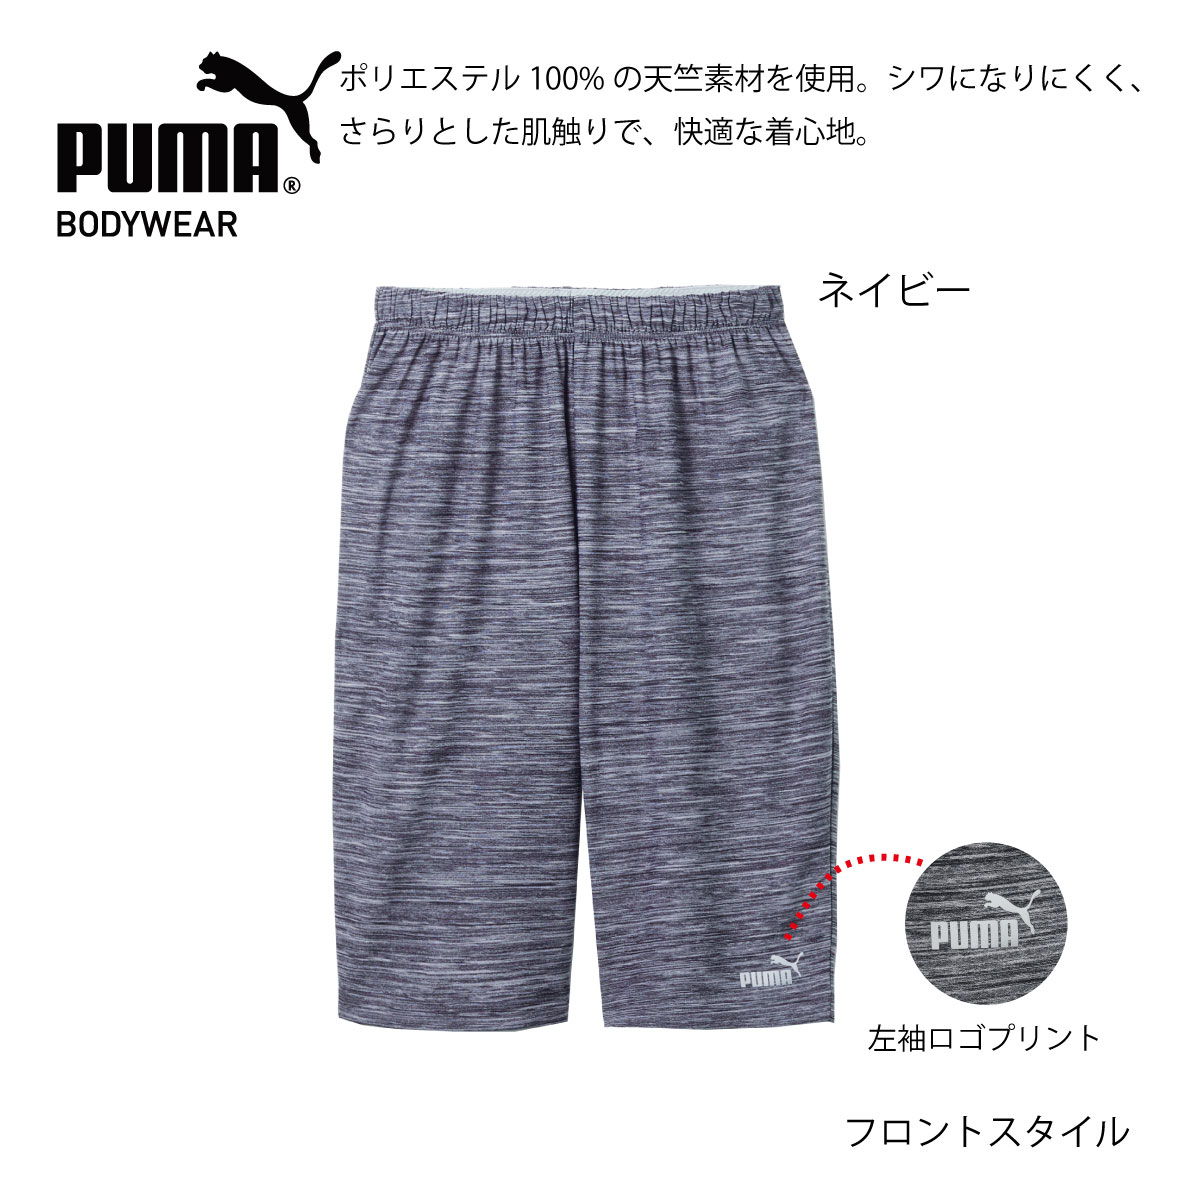 PUMA プーマインナーシャツ 長袖130cm レッド